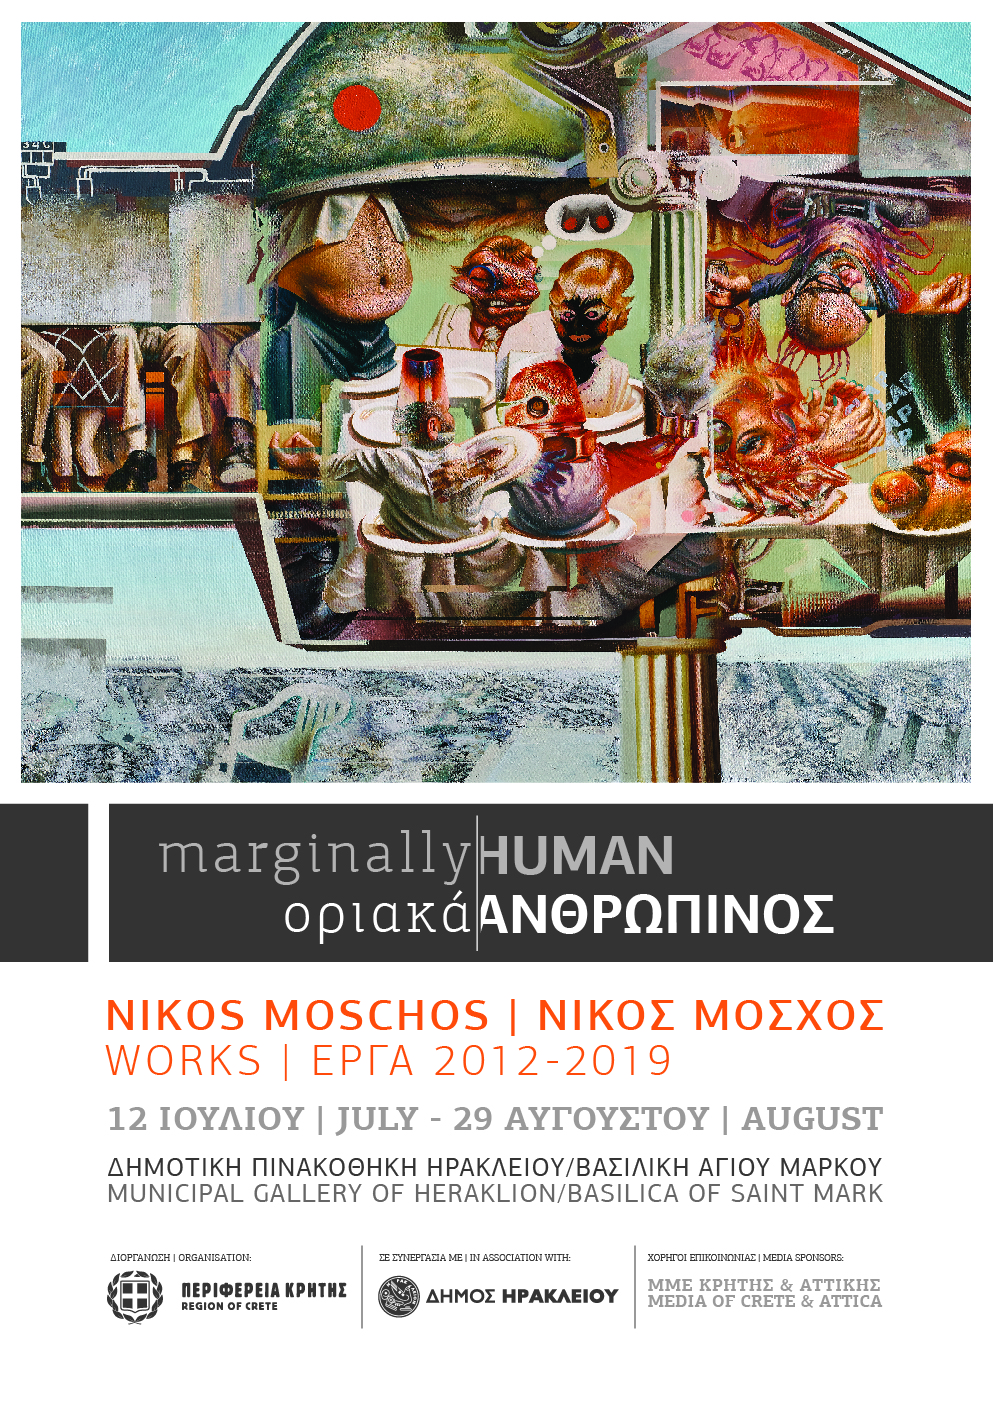 «Οριακά ανθρώπινος» ο τίτλος της έκθεσης ζωγραφικής του Νίκου Μόσχου